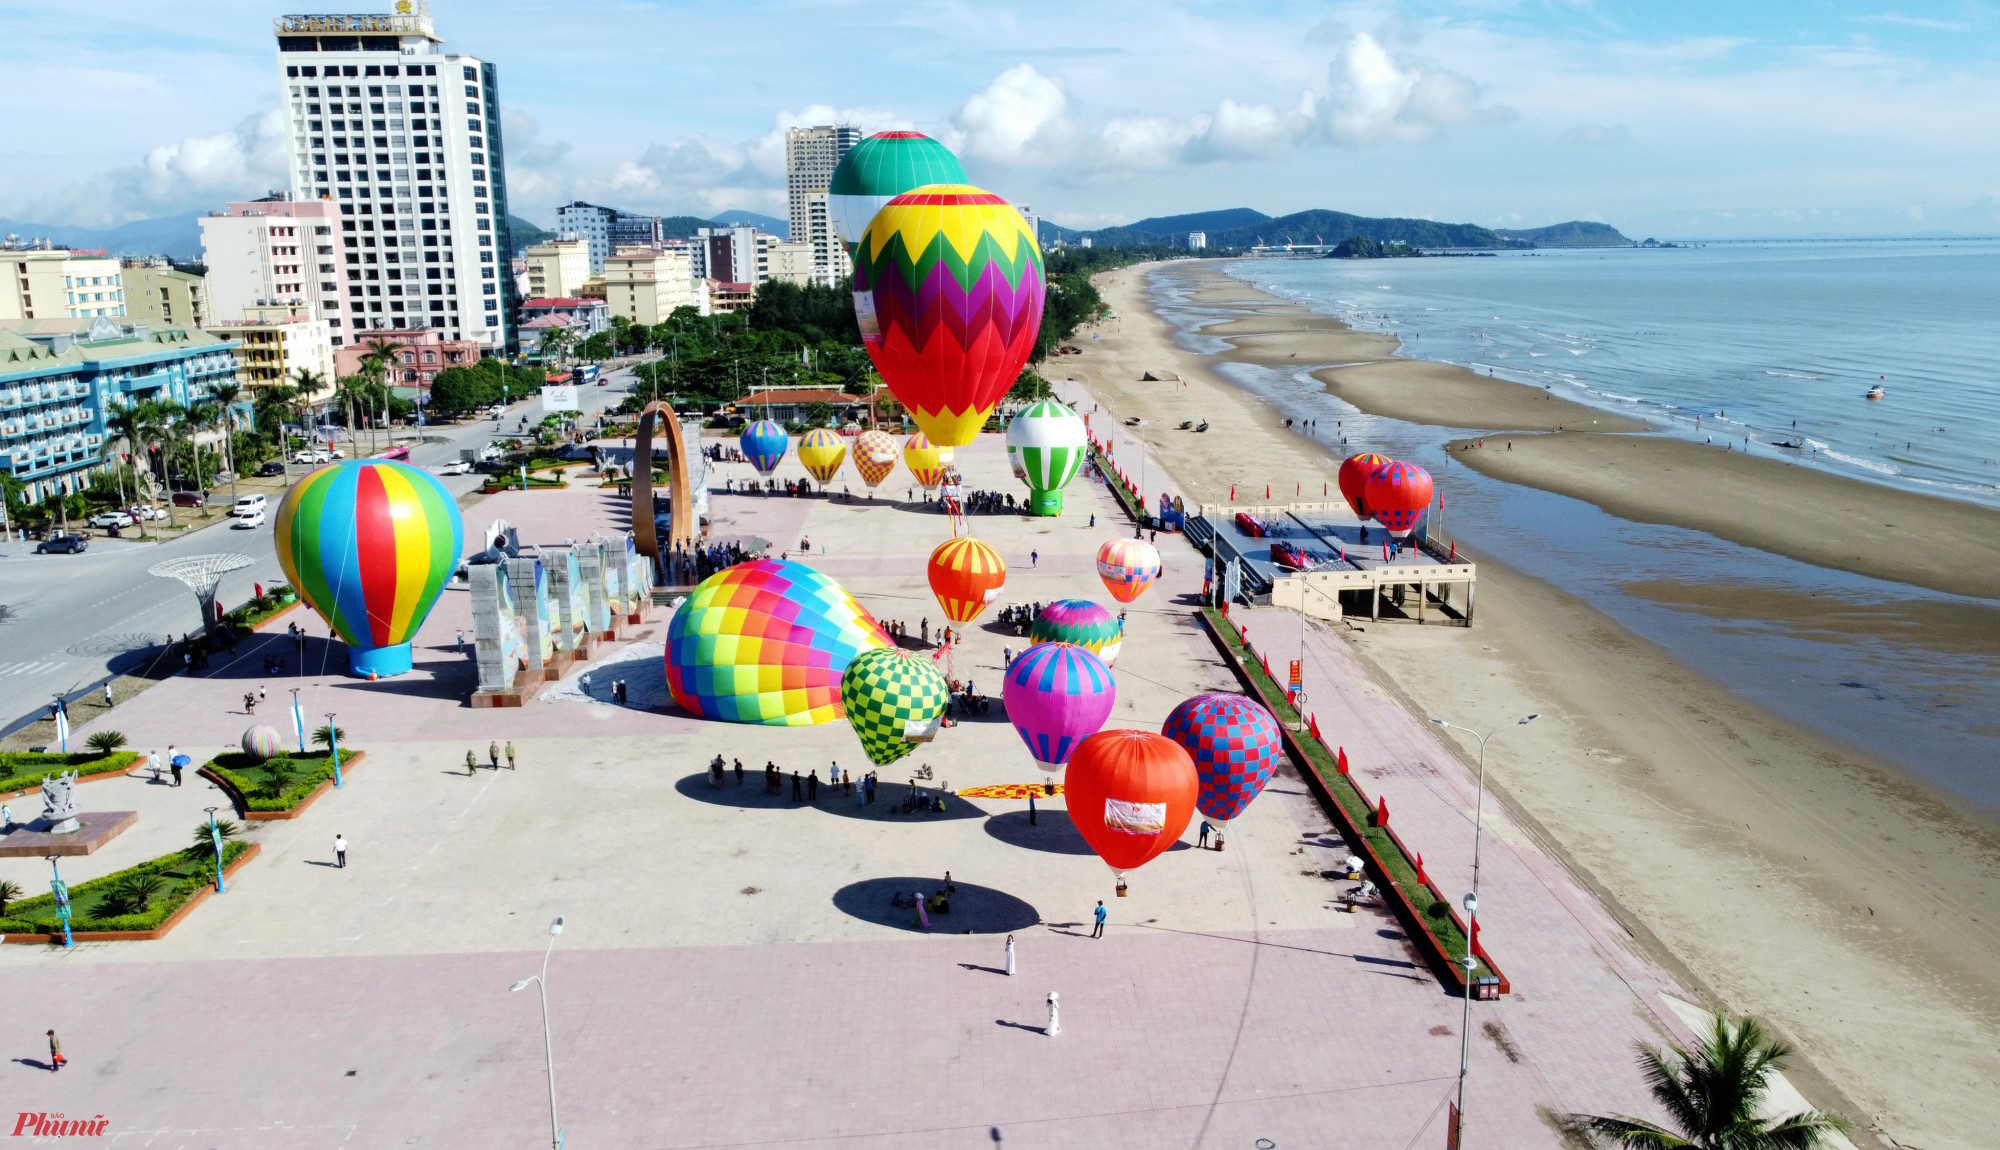 Theo kế hoạch, ngày hội khinh khí cầu Cửa Lò diễn ra trong 2 ngày (15 và 16/7). Trong đó, du khách sẽ được ngồi khinh khí cầu trải nghiệm từ 6g30-9g30 buổi sáng và 16h-18g30 buổi chiều.